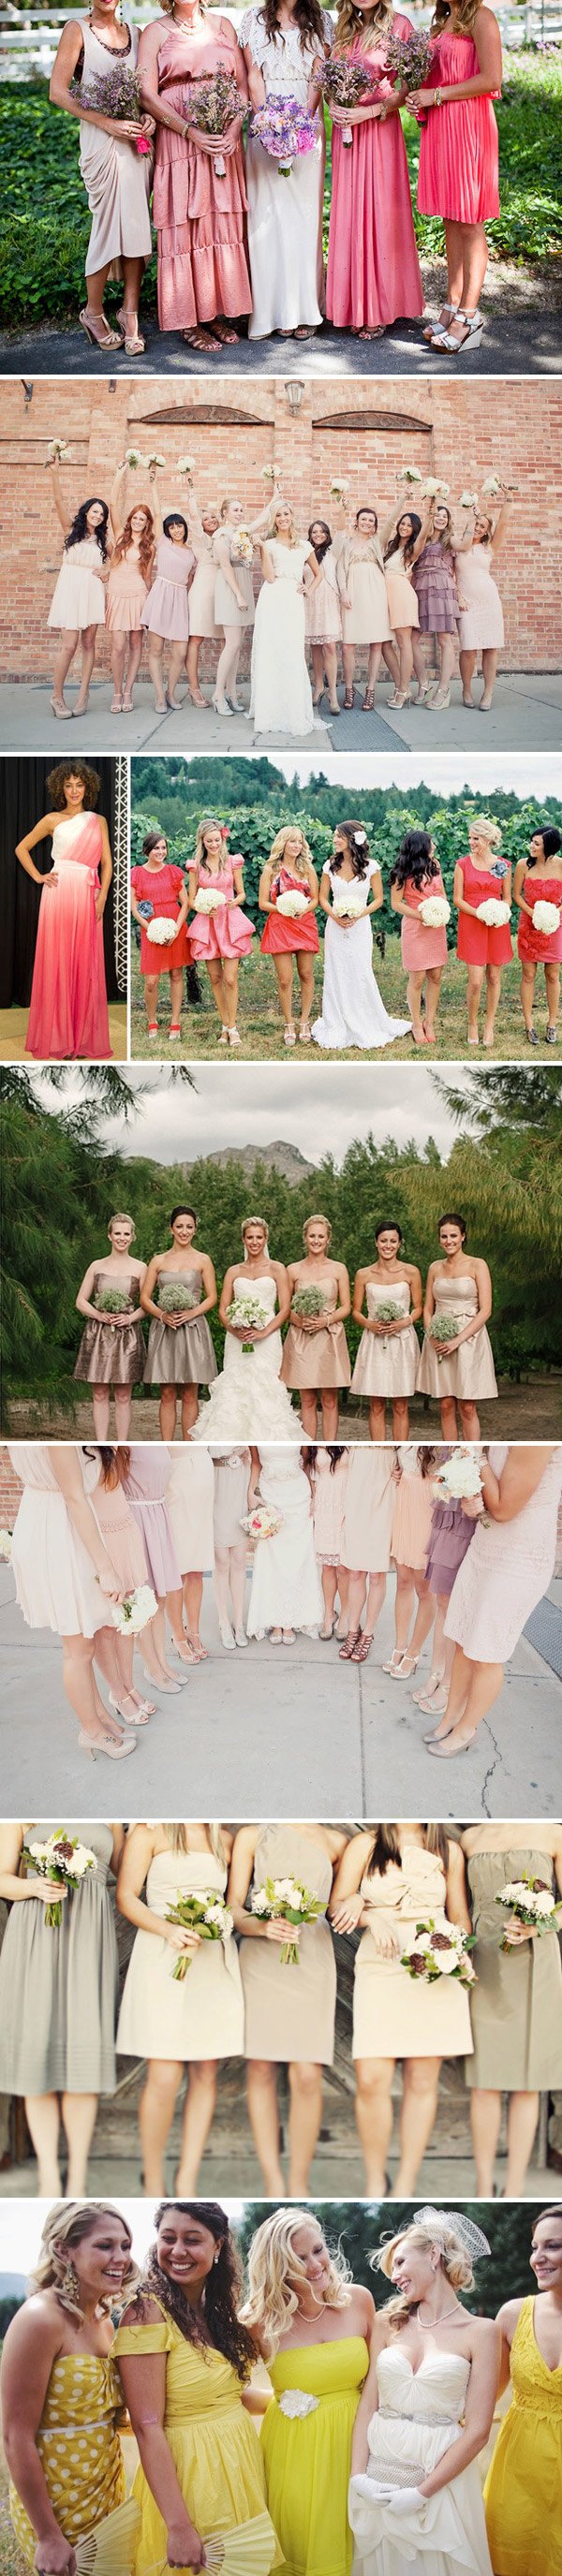 Pretty Maids All In A Row Rock Wedding Uk Wedding Blog